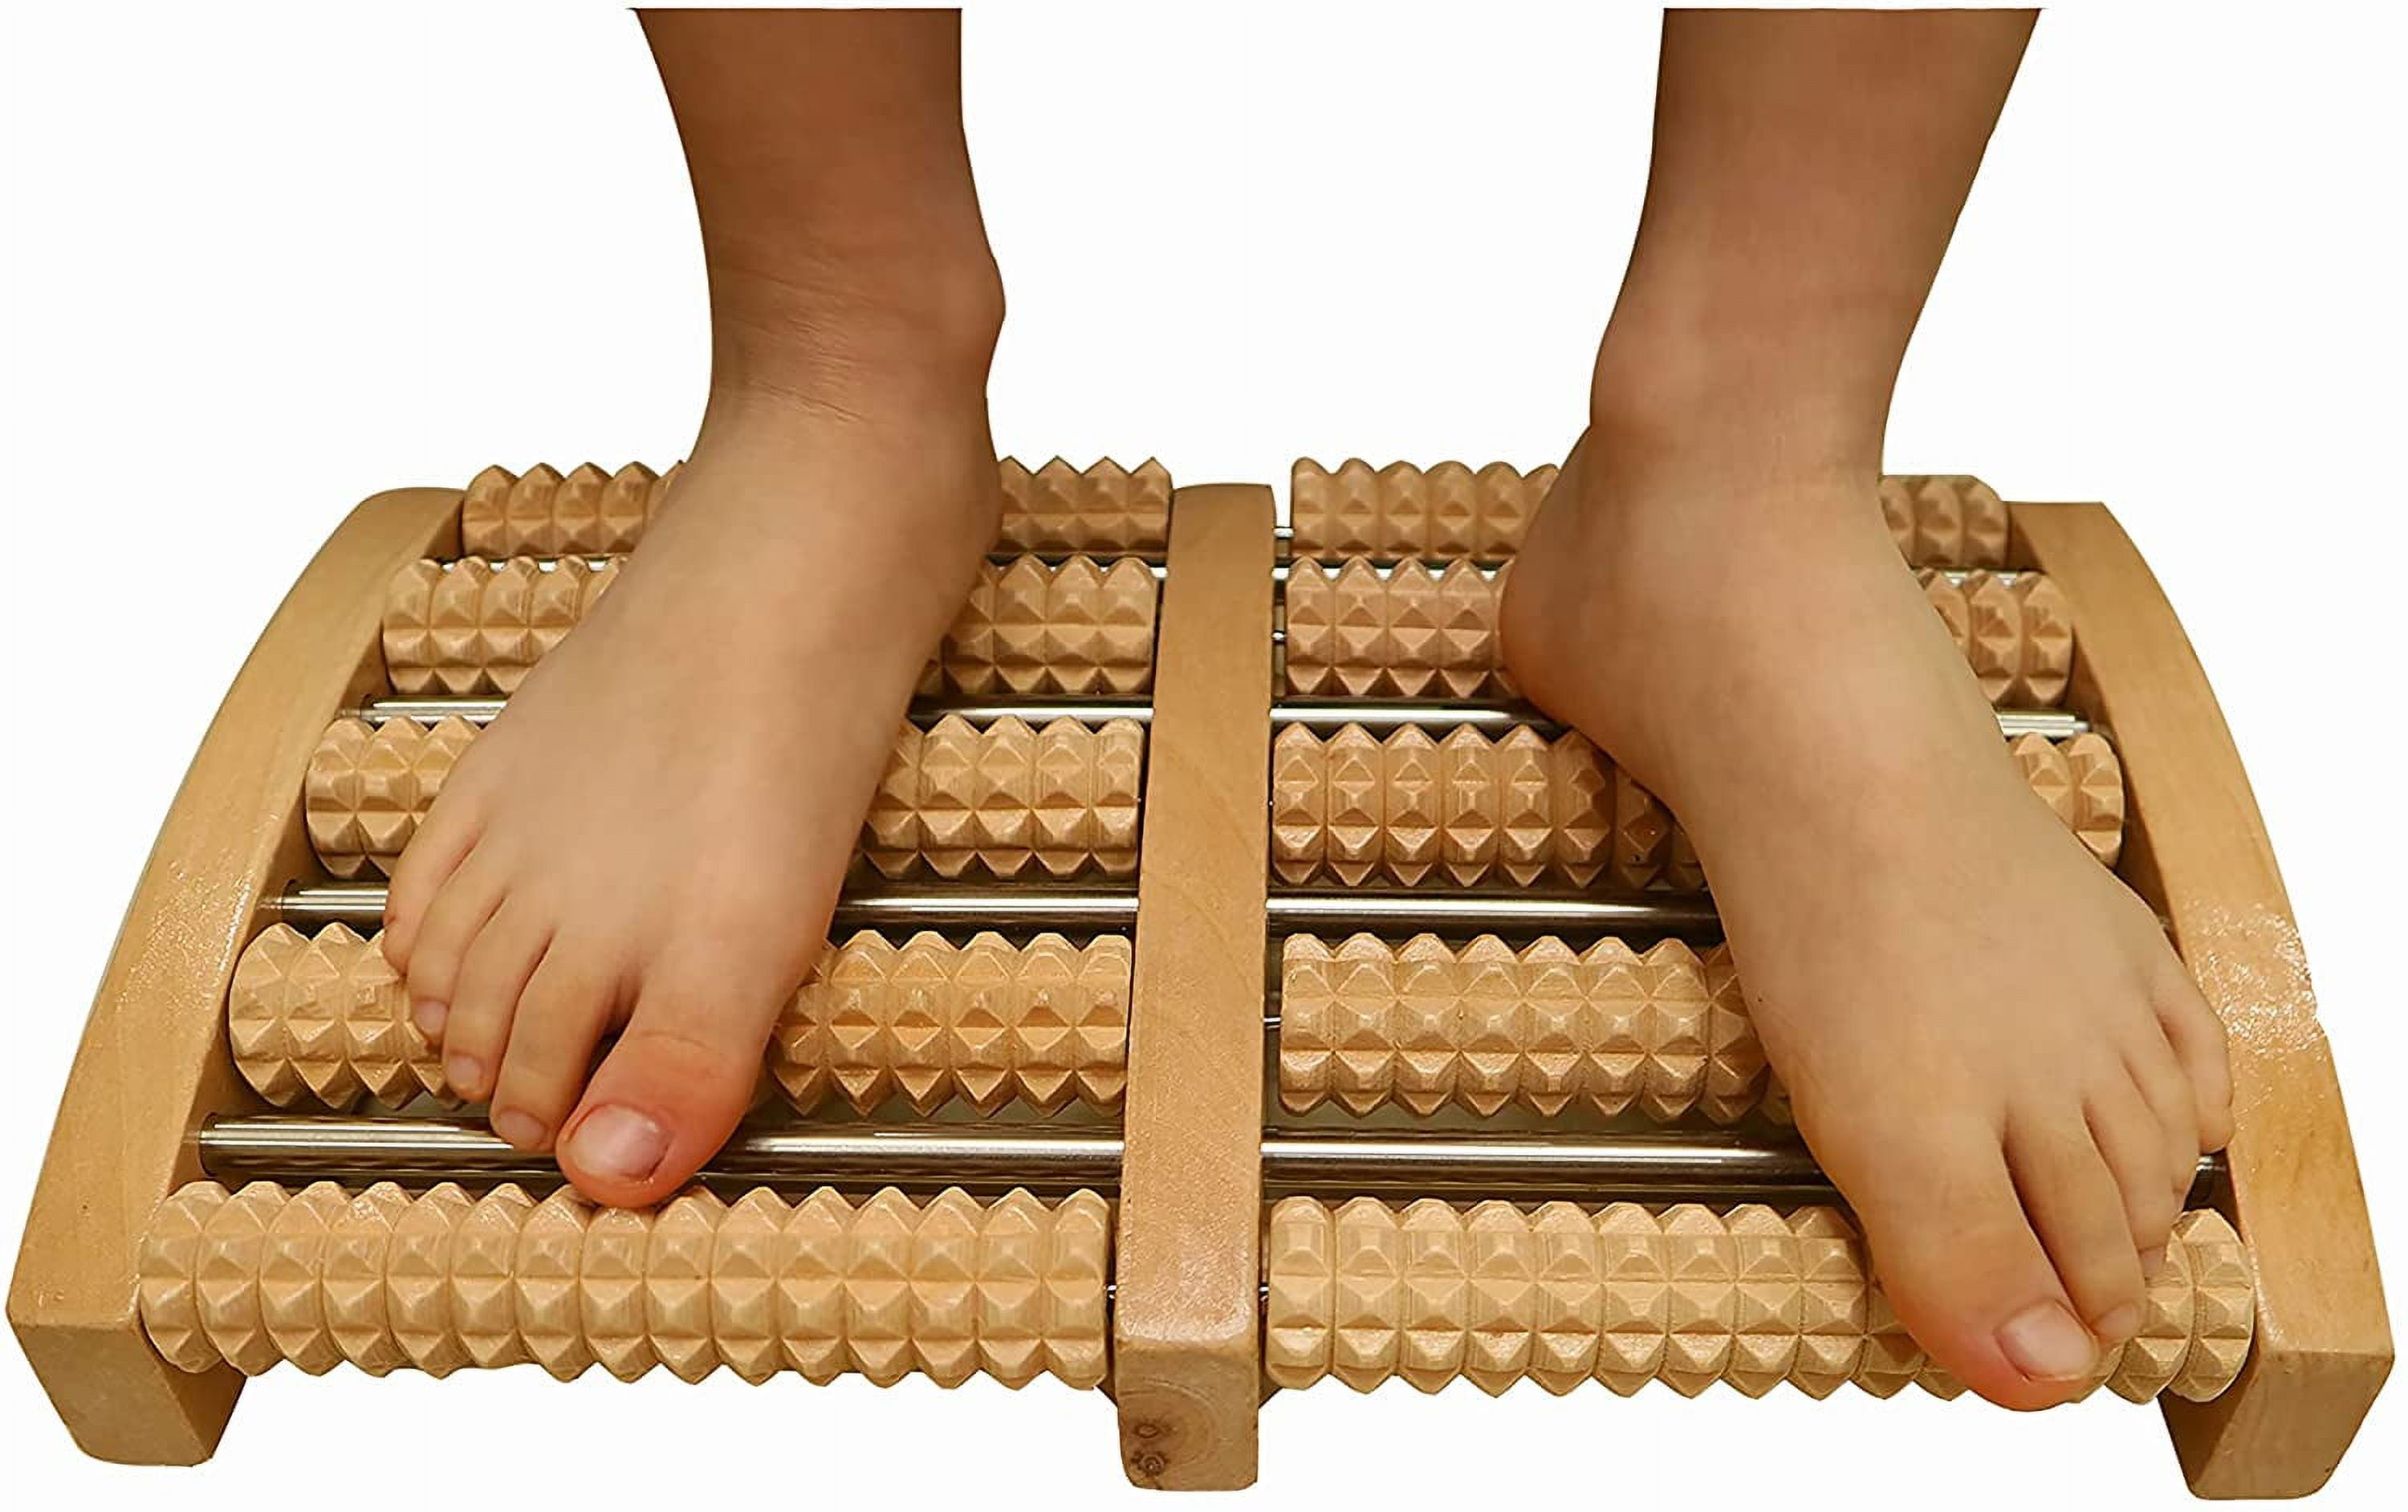 Wooden Foot Massager Roller - Plantar Fasciitis & Stress Relief